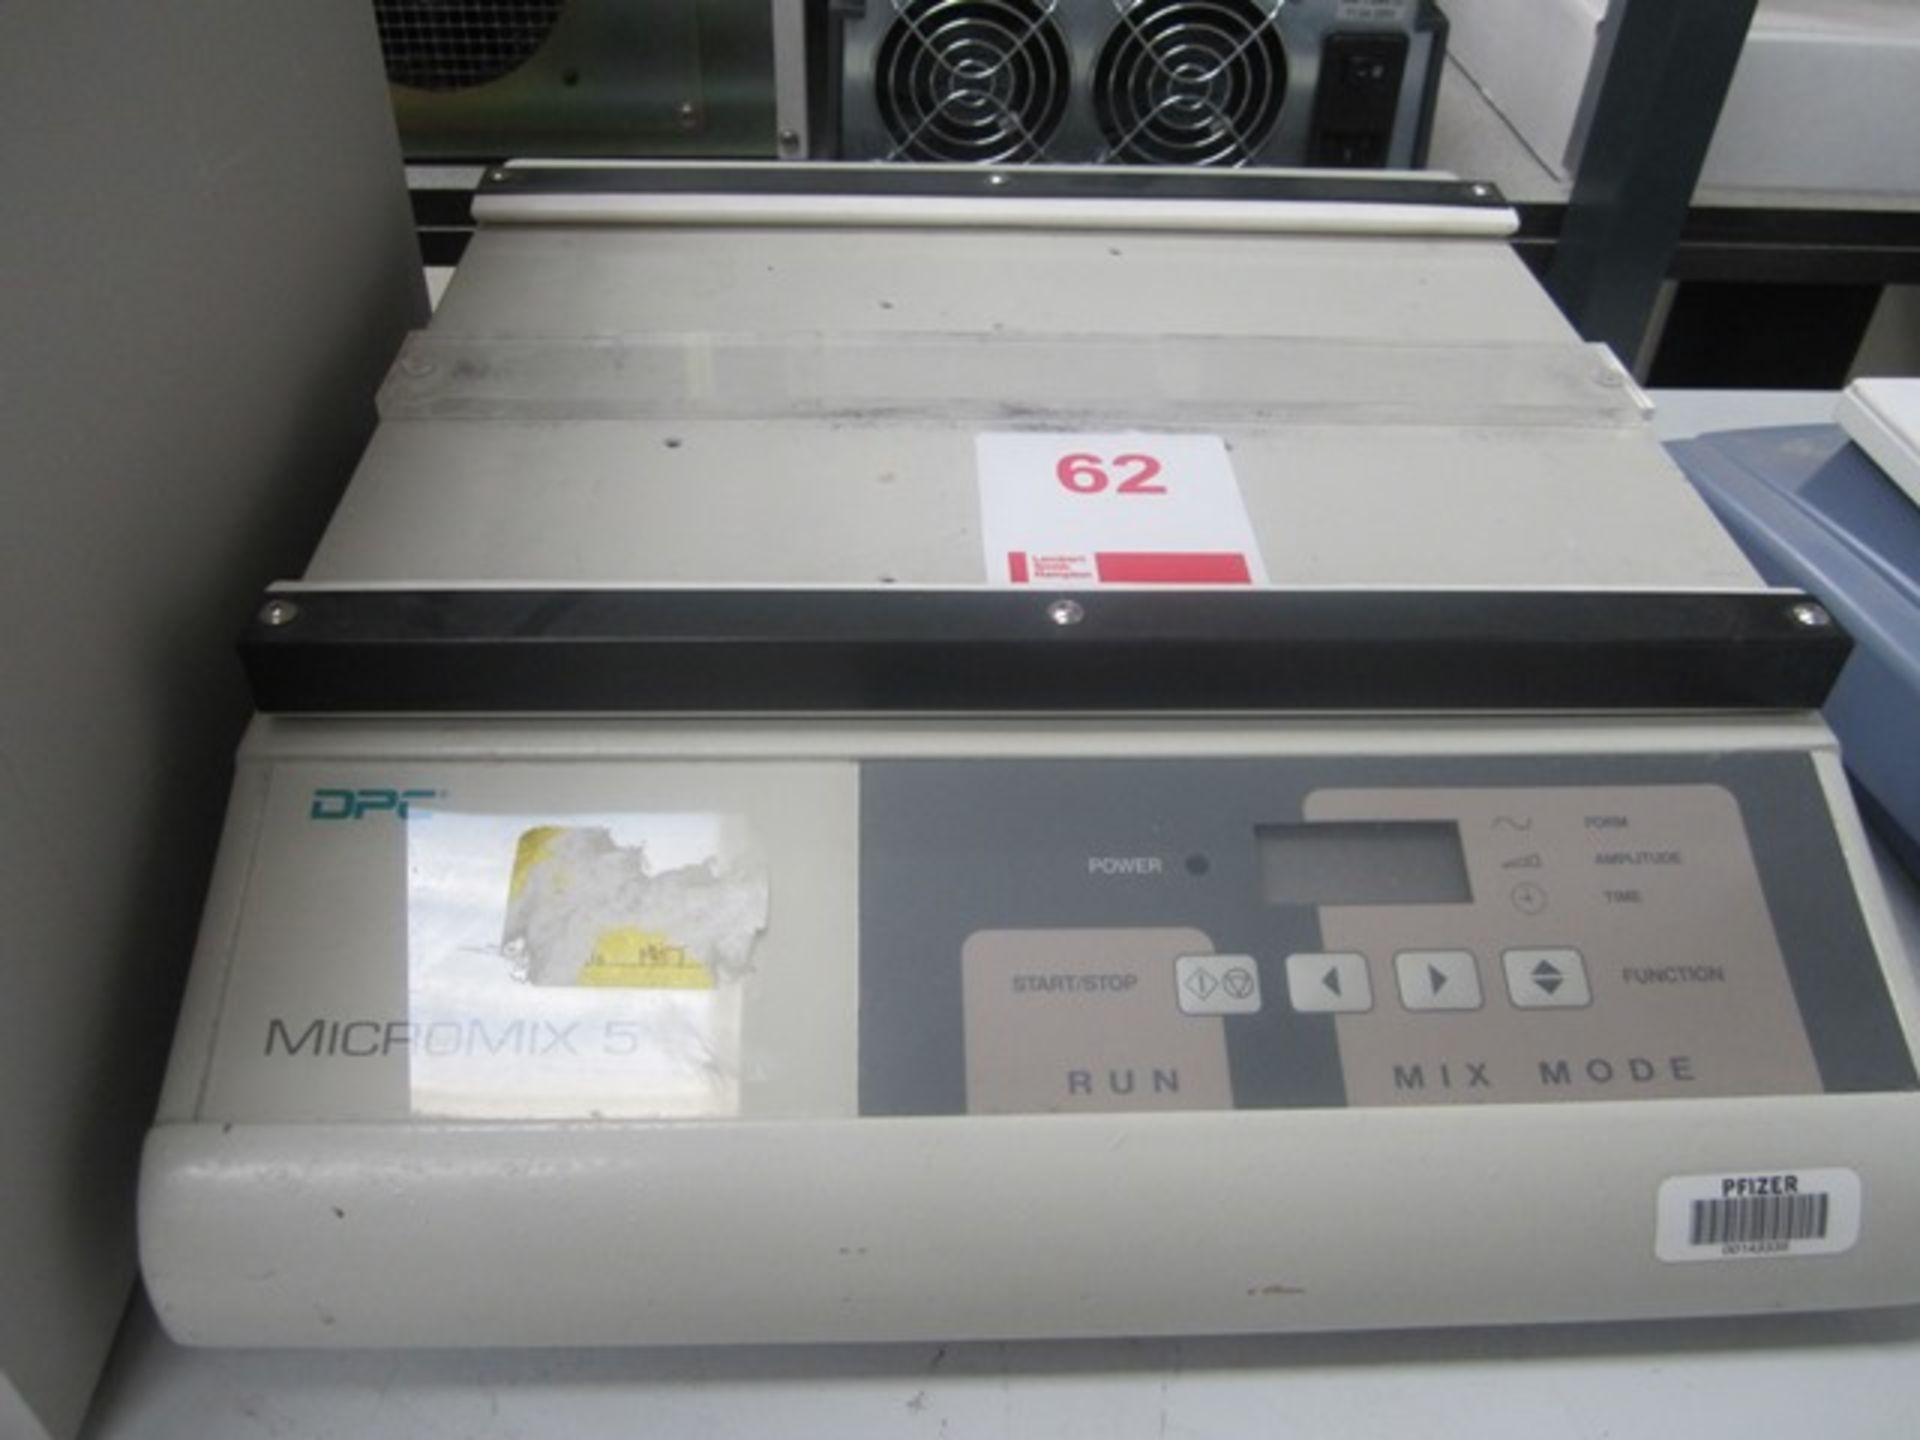 DPC MciroMix 5 bench top mixer, serial number 0428